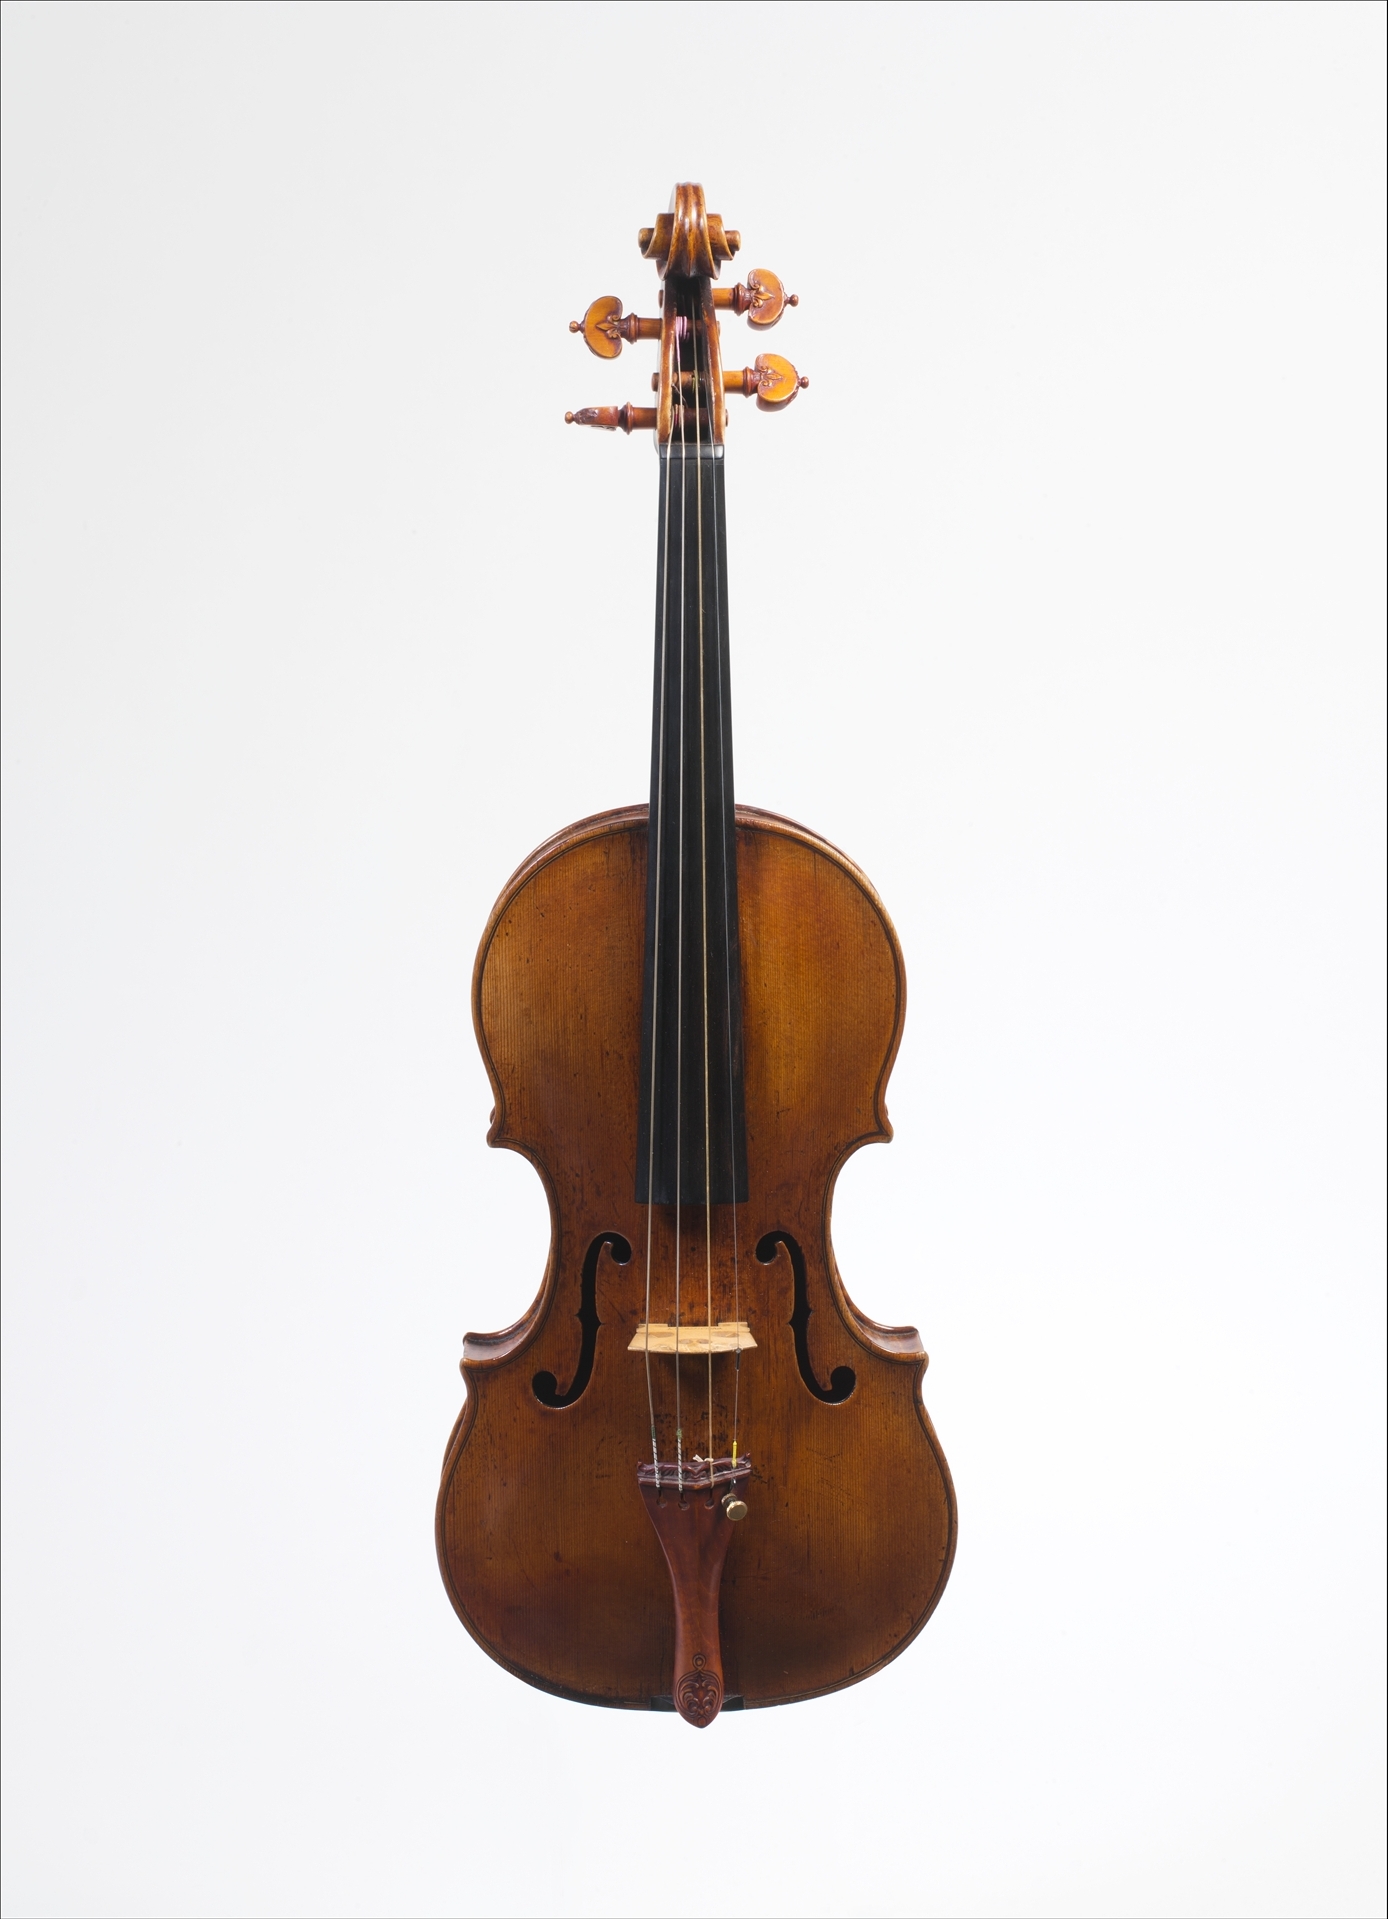 前“库尔茨”小提琴 by 安德雷亚 阿马蒂 - 约1560年 - 57.4 x 20.2 厘米 